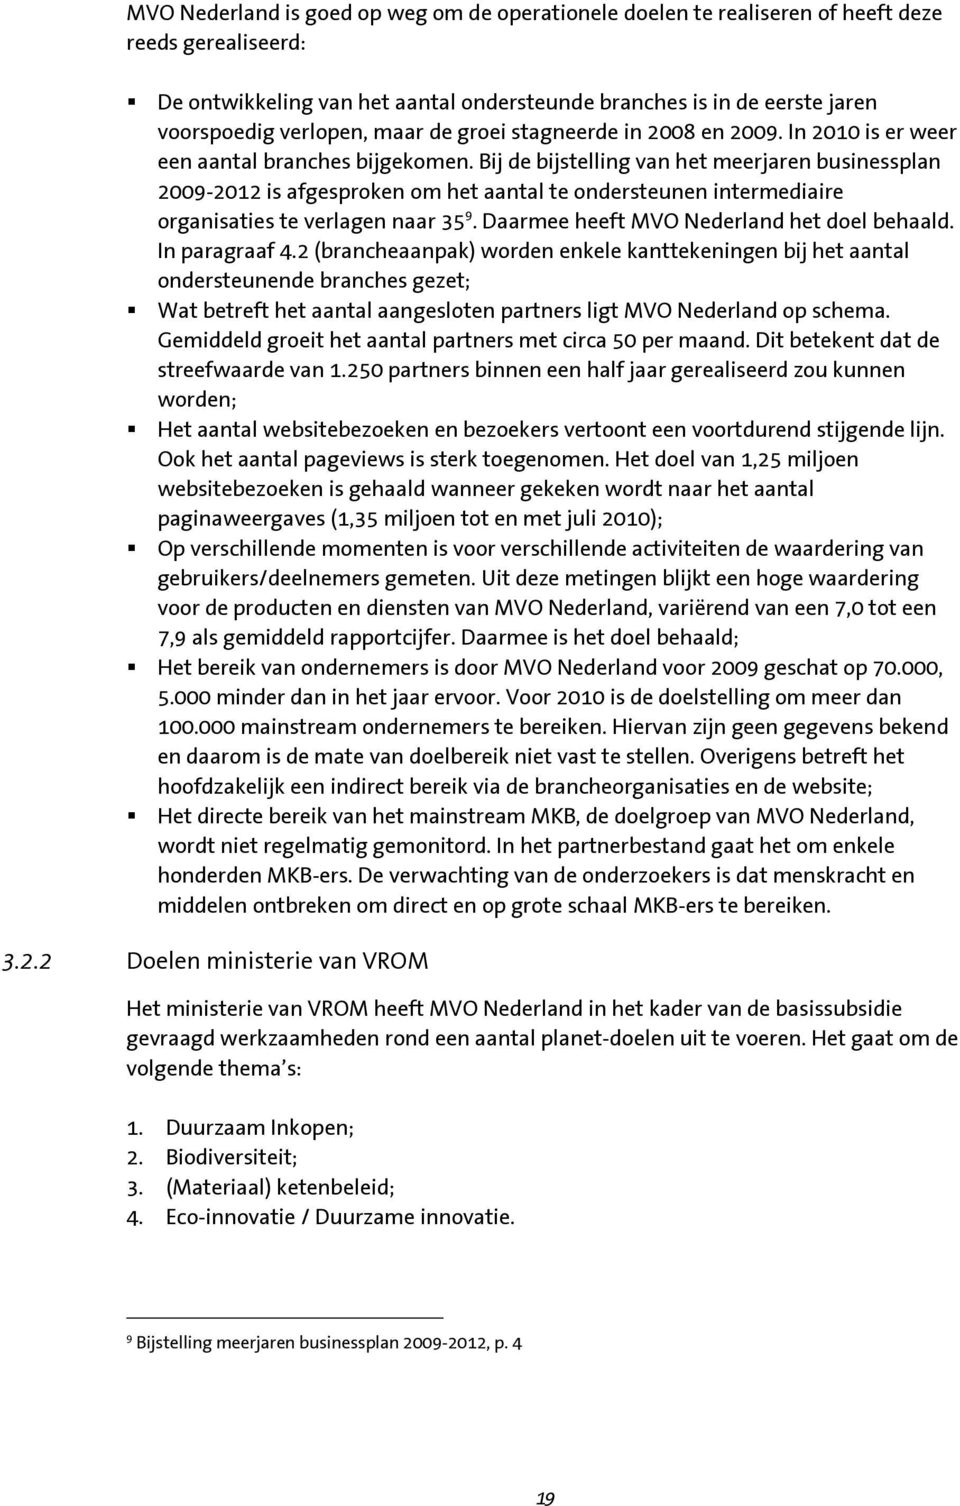 Bij de bijstelling van het meerjaren businessplan 2009-2012 is afgesproken om het aantal te ondersteunen intermediaire organisaties te verlagen naar 35 9. Daarmee heeft MVO Nederland het doel behaald.